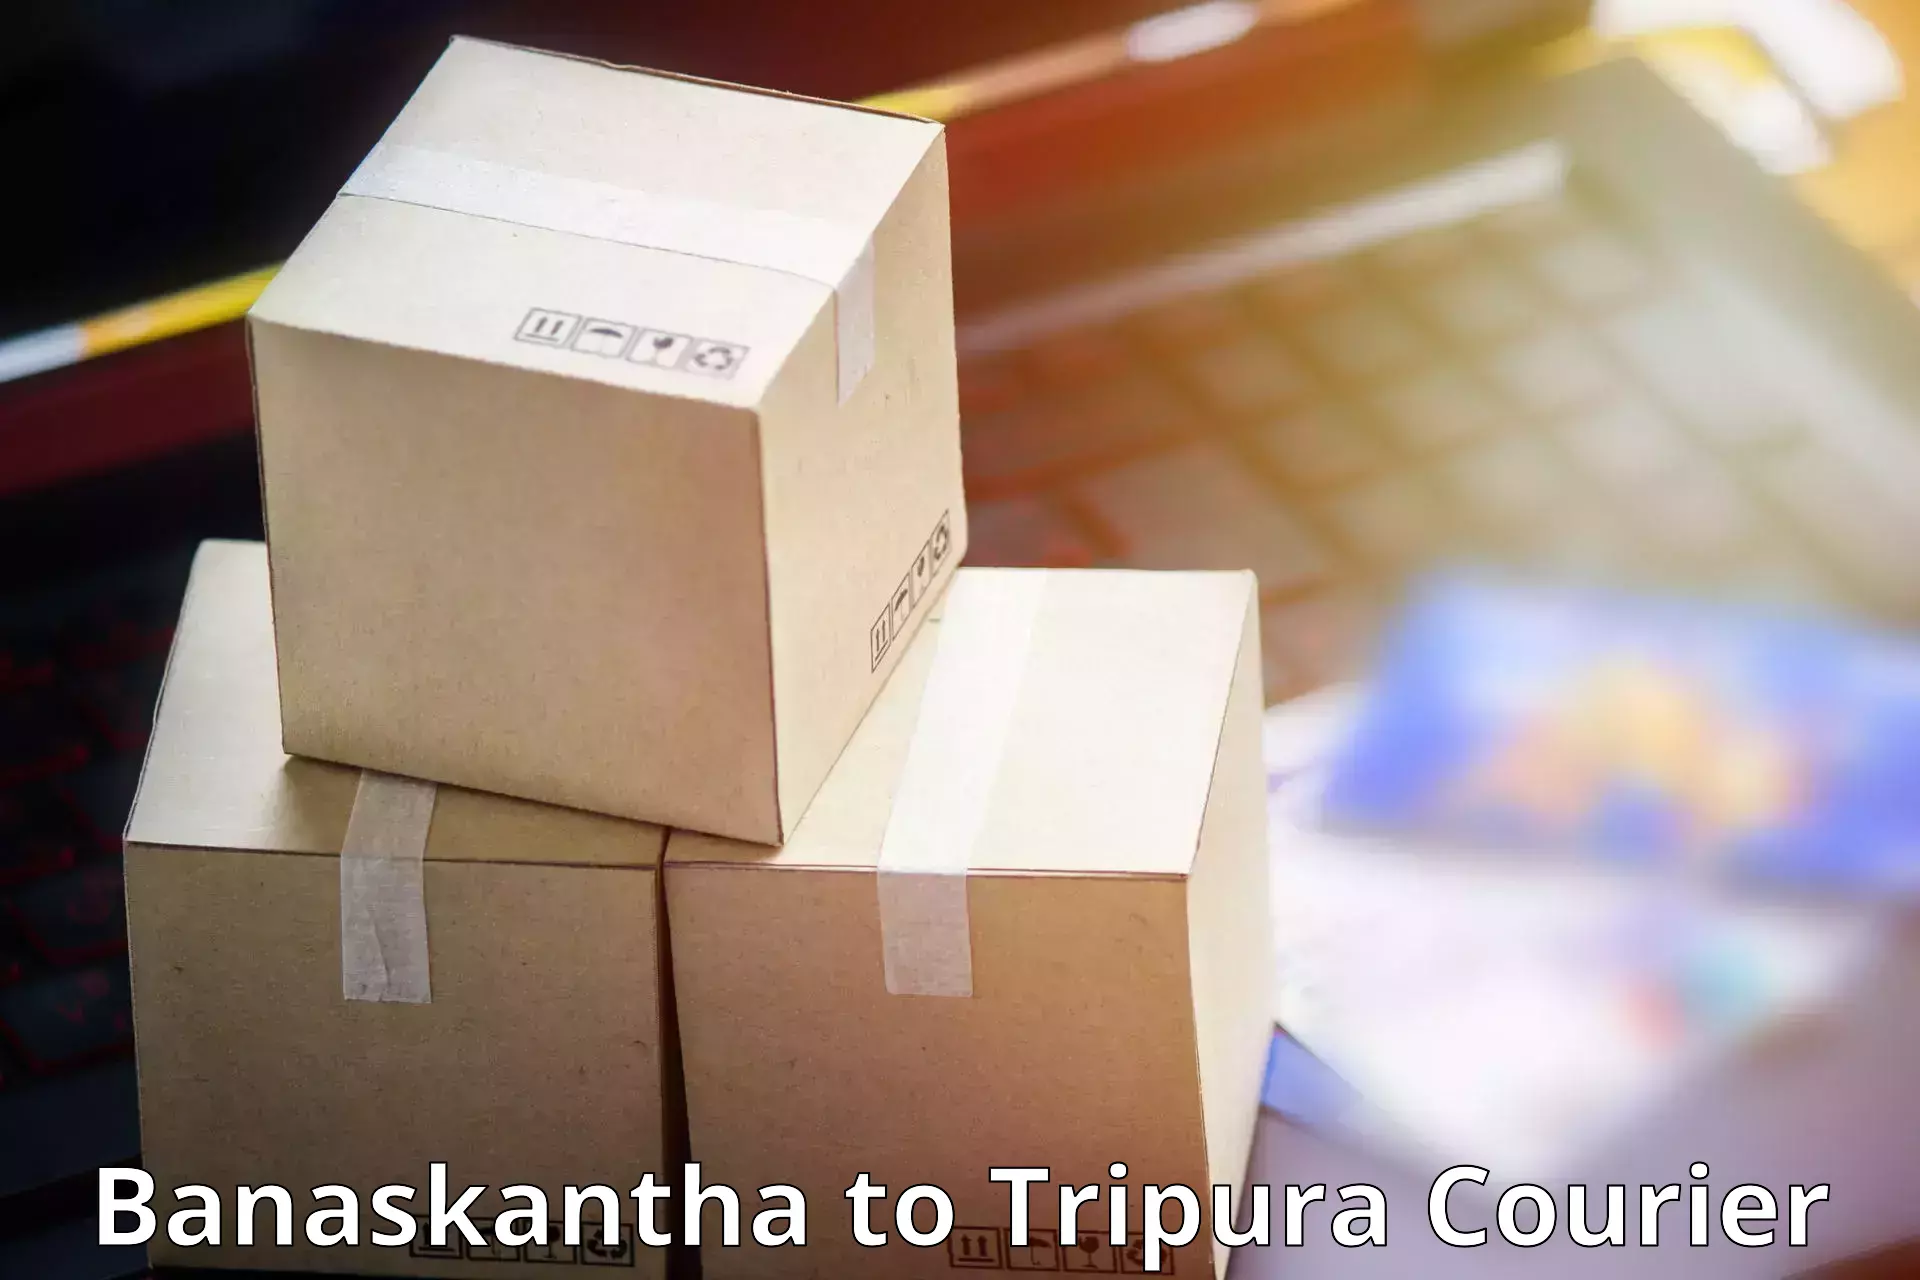 Next-generation courier services Banaskantha to Amarpur